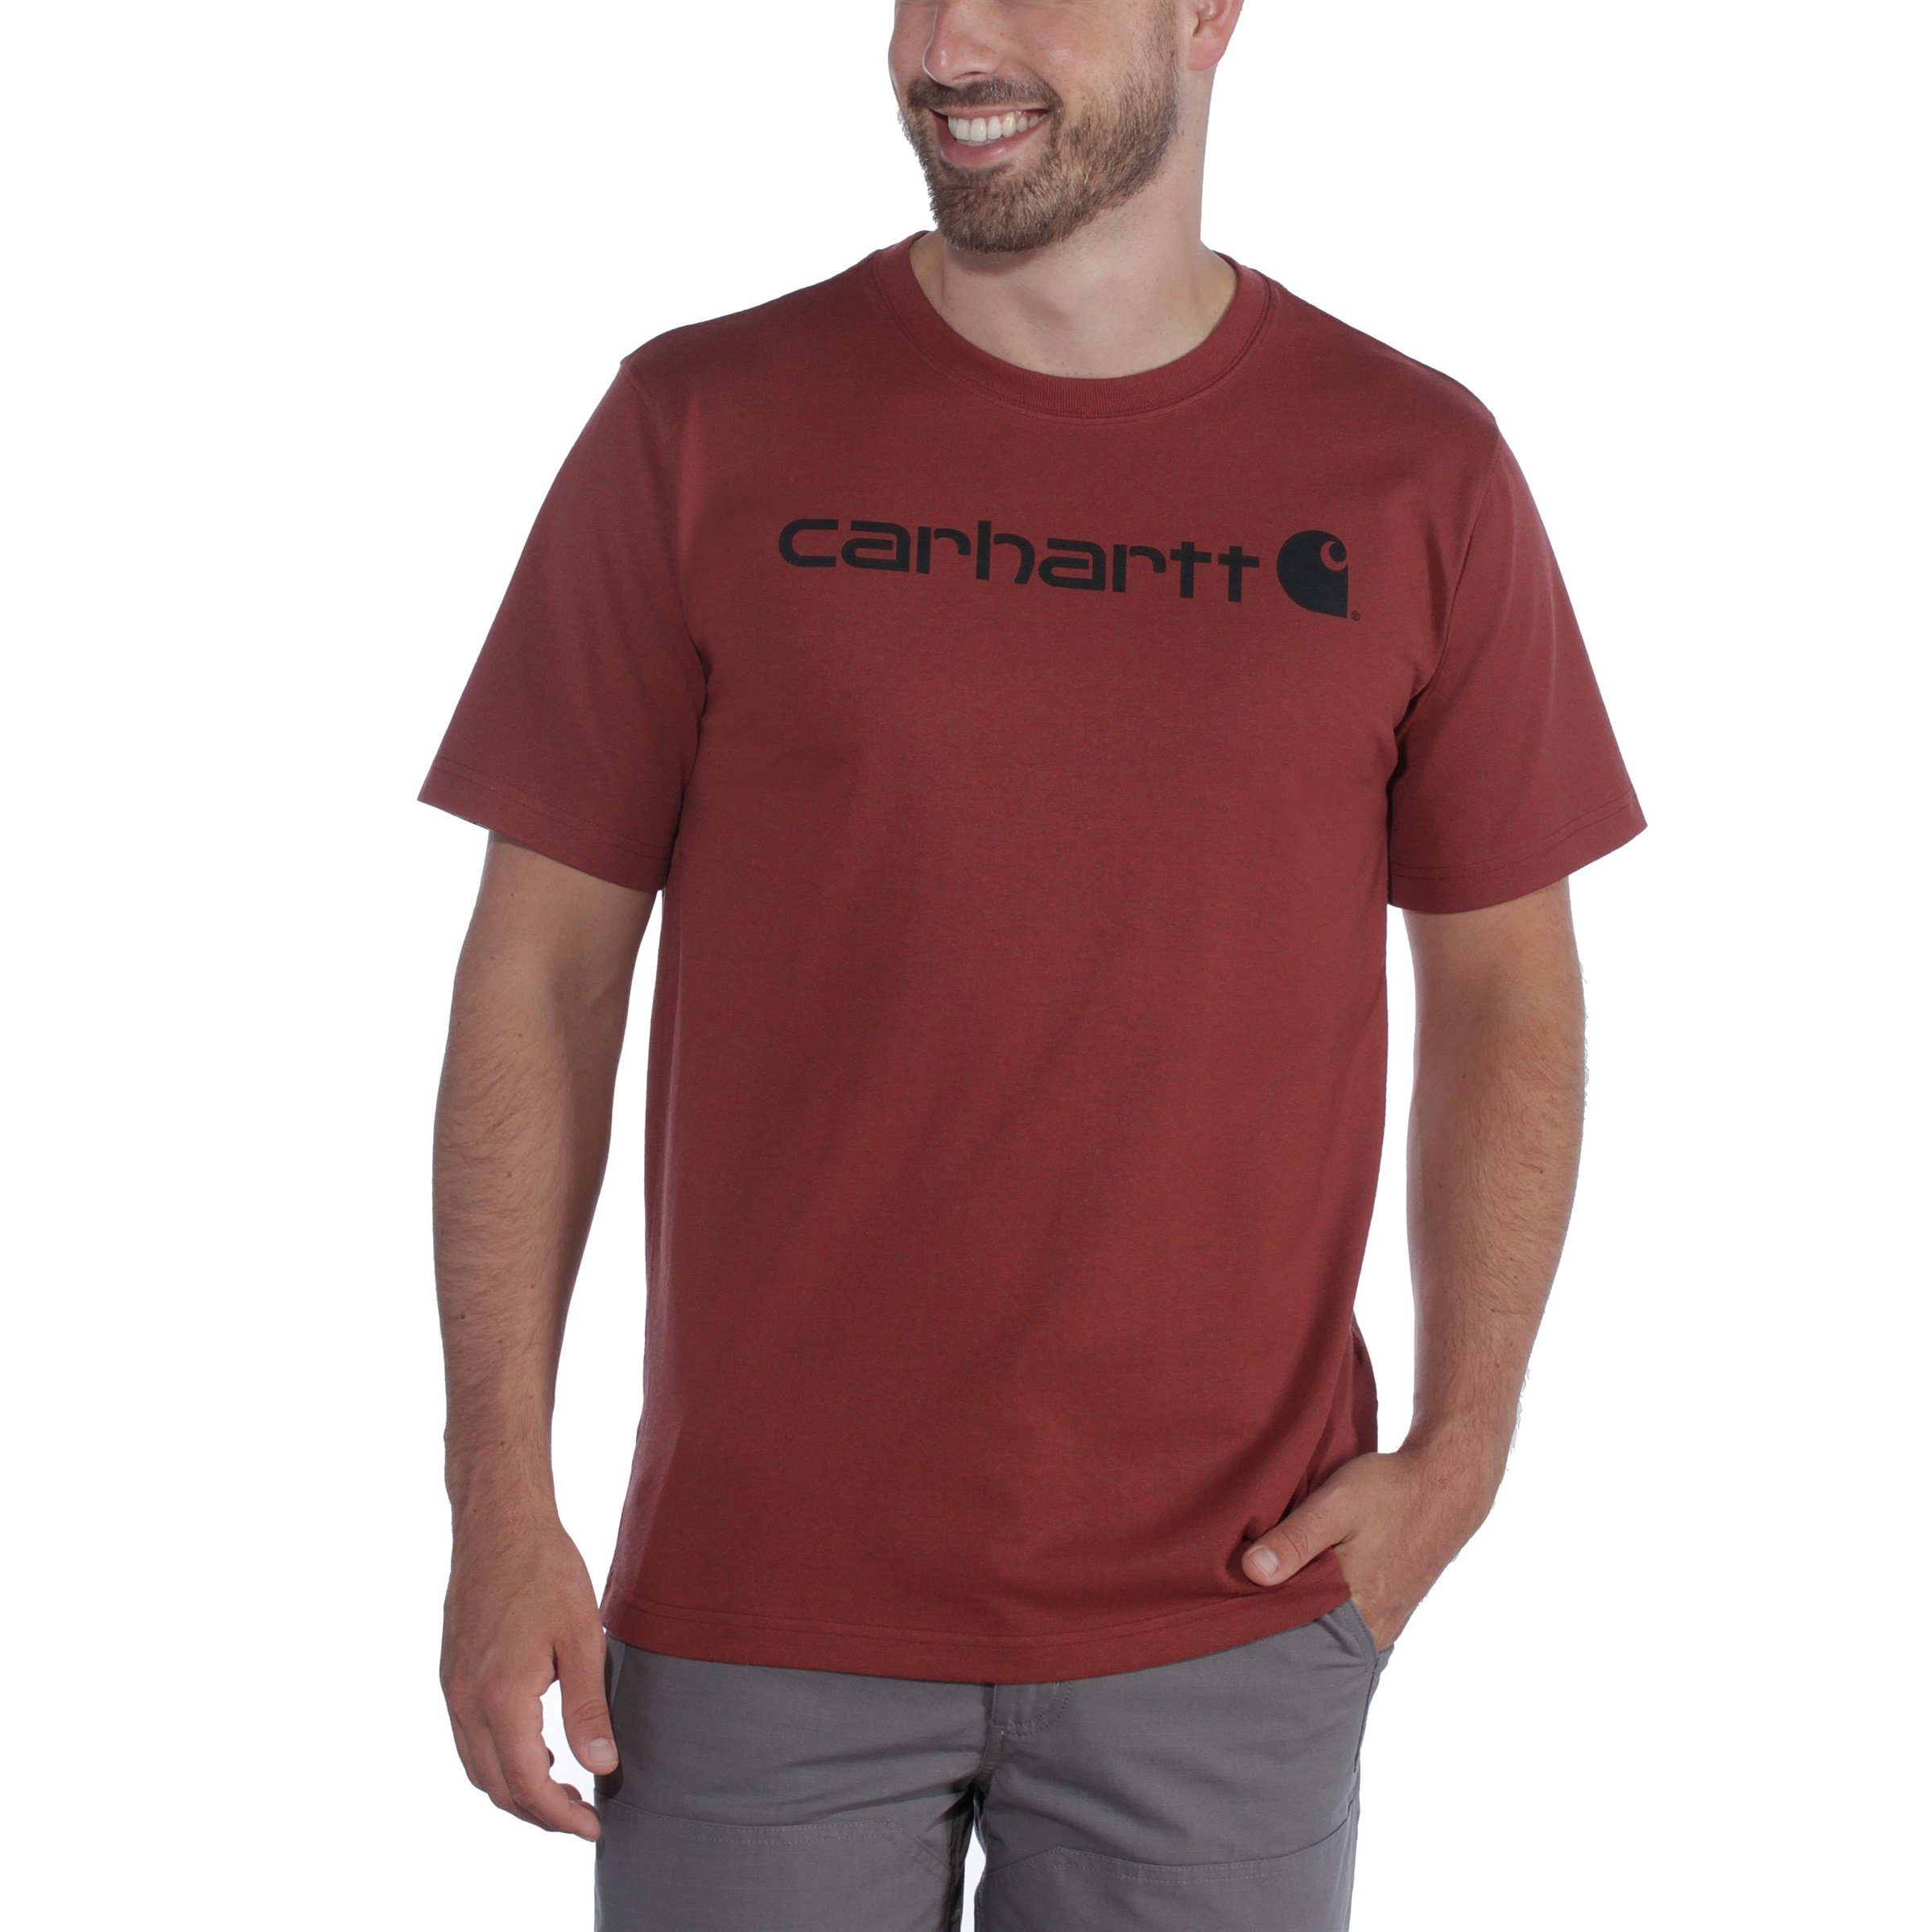 Carhartt T-Shirt Fit black Carhartt T-Shirt Heavyweight Graphic Short-Sleeve Logo Relaxed Herren Adult